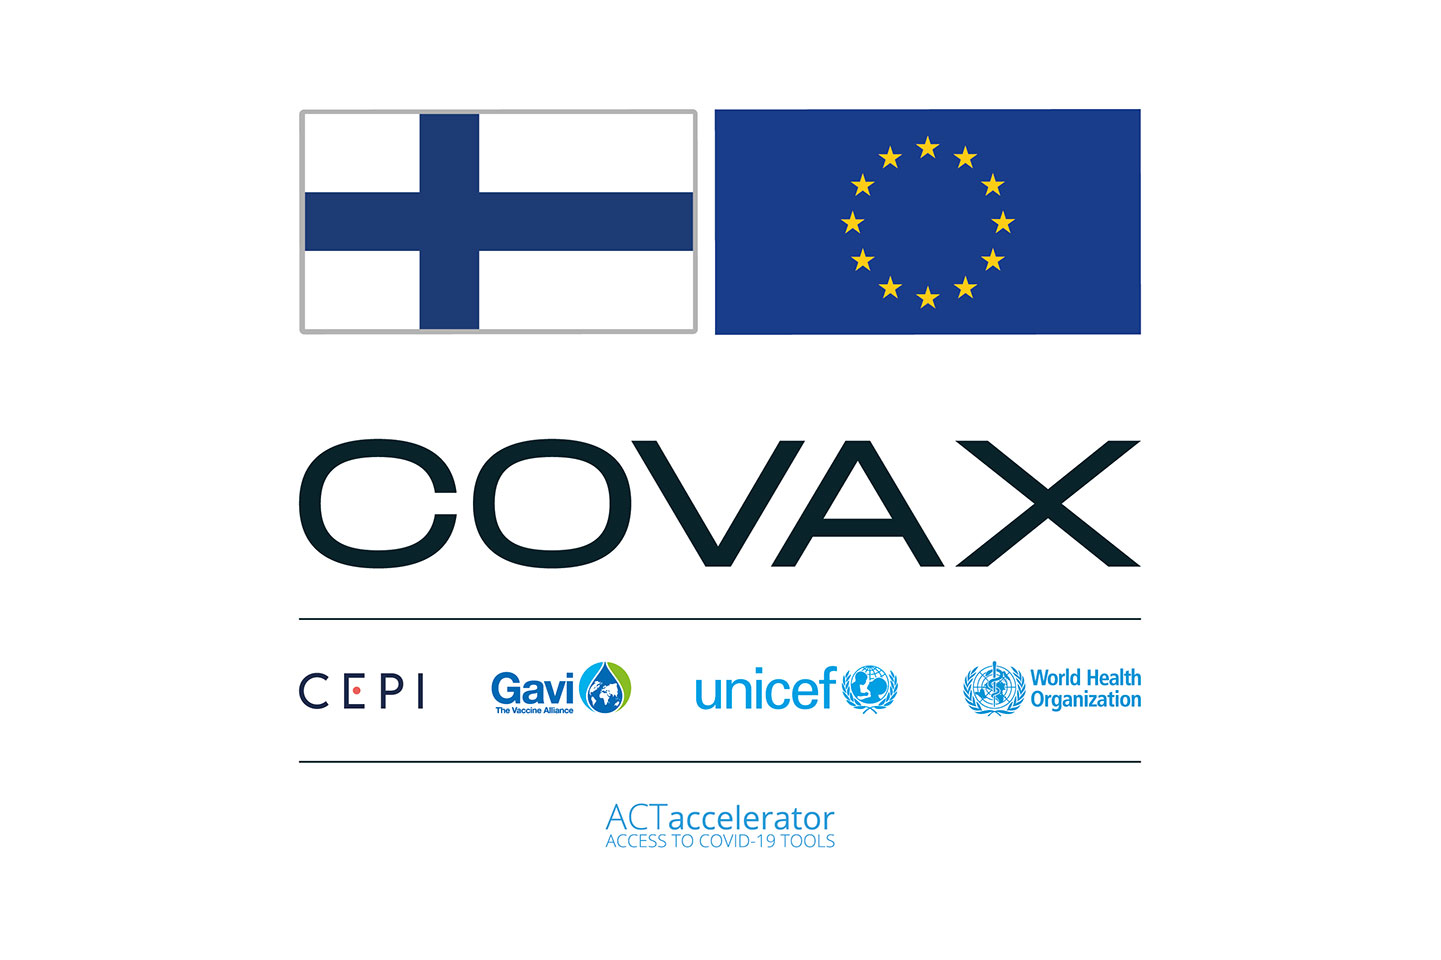 Finnish COVAX